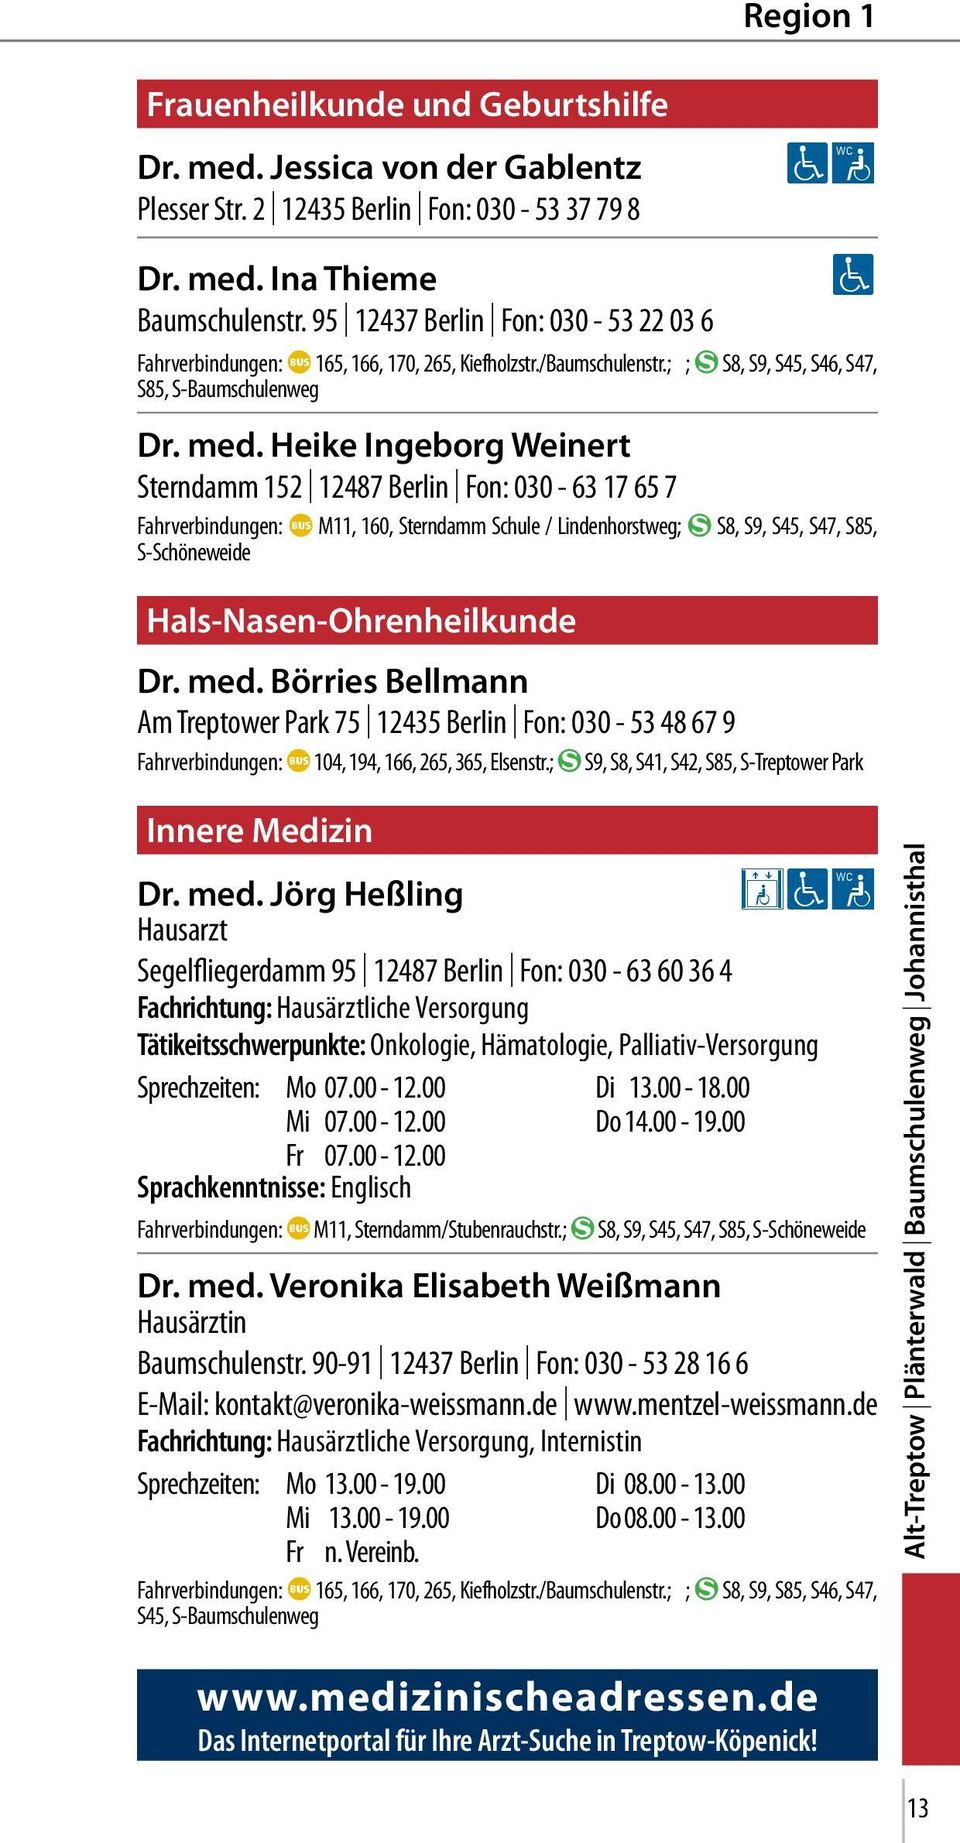 Heike Ingeborg Weinert Sterndamm 152 12487 Berlin Fon: 030-63 17 65 7 Fahrverbindungen: E M11, 160, Sterndamm Schule / Lindenhorstweg; B S8, S9, S45, S47, S85, S-Schöneweide Hals-Nasen-Ohrenheilkunde